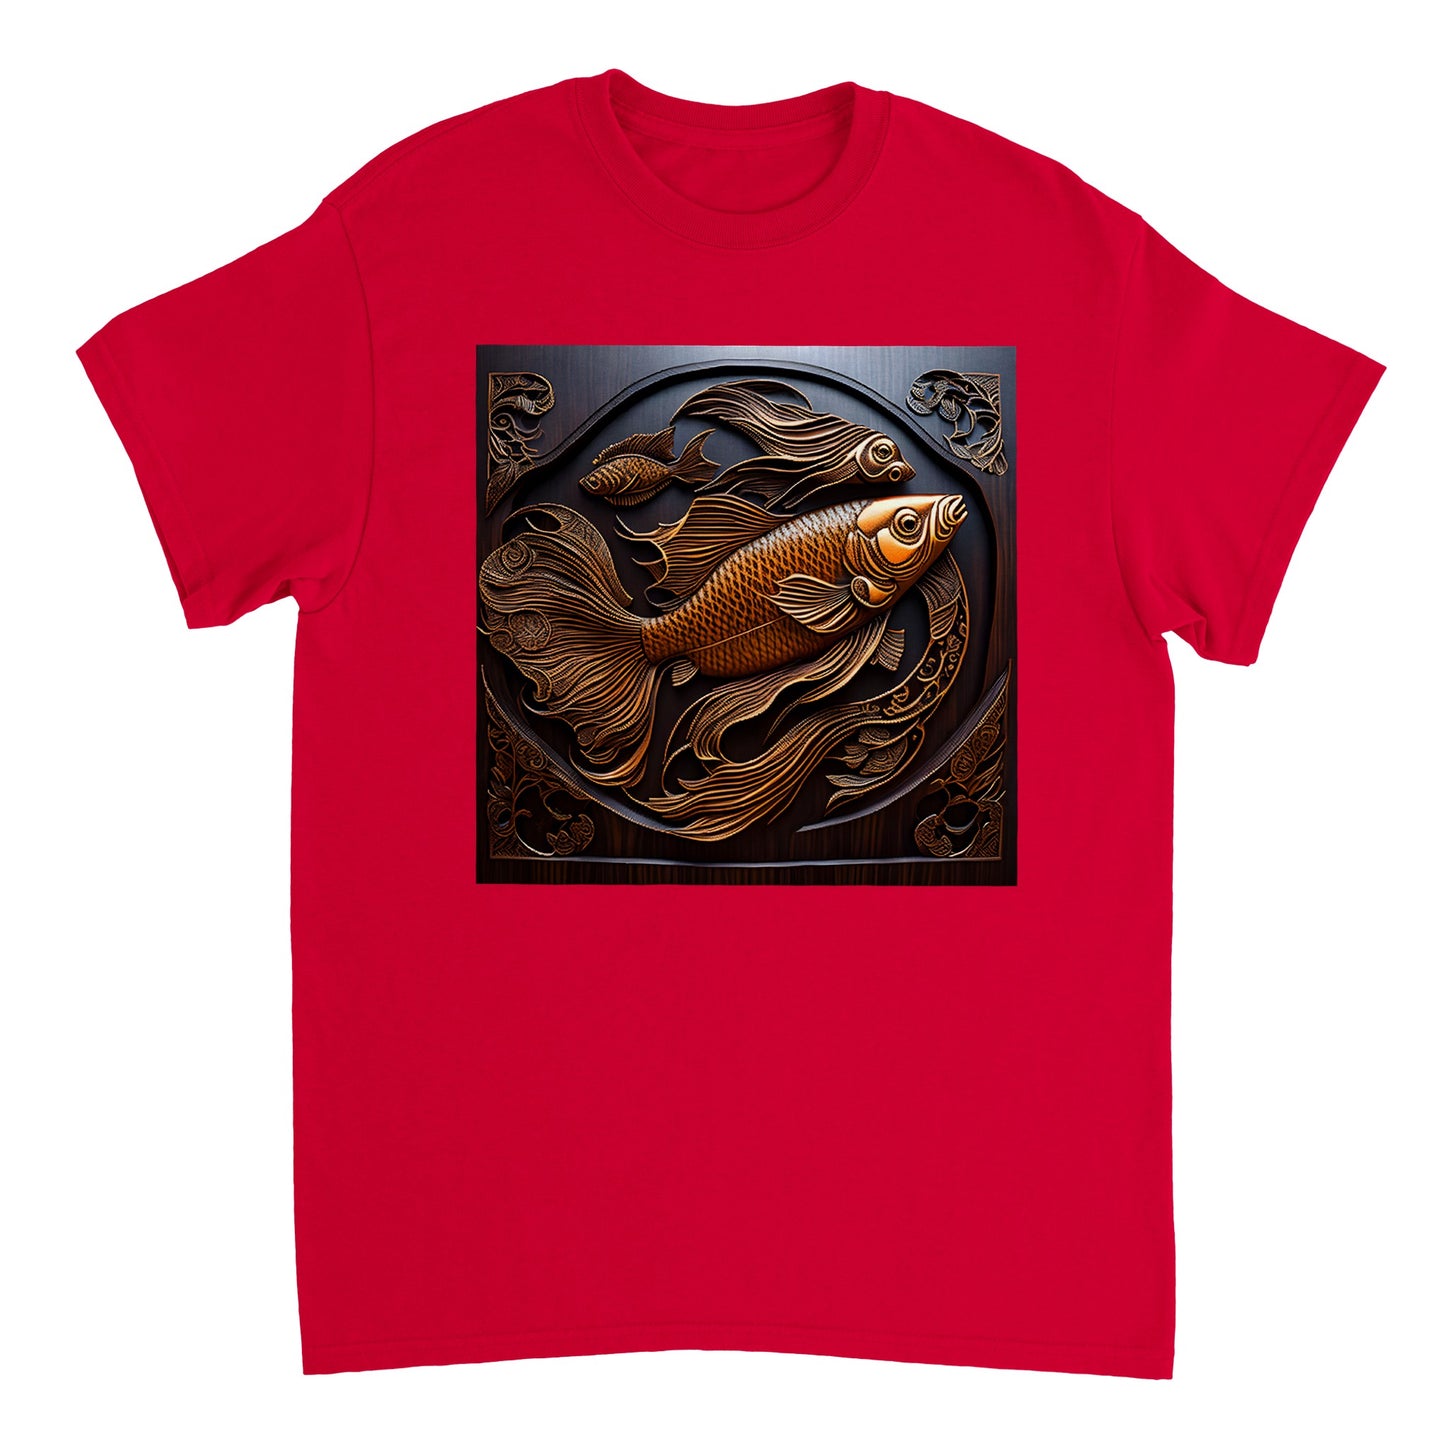 3D Wooden Animal Art - Heavyweight Unisex Crewneck T-shirt 53